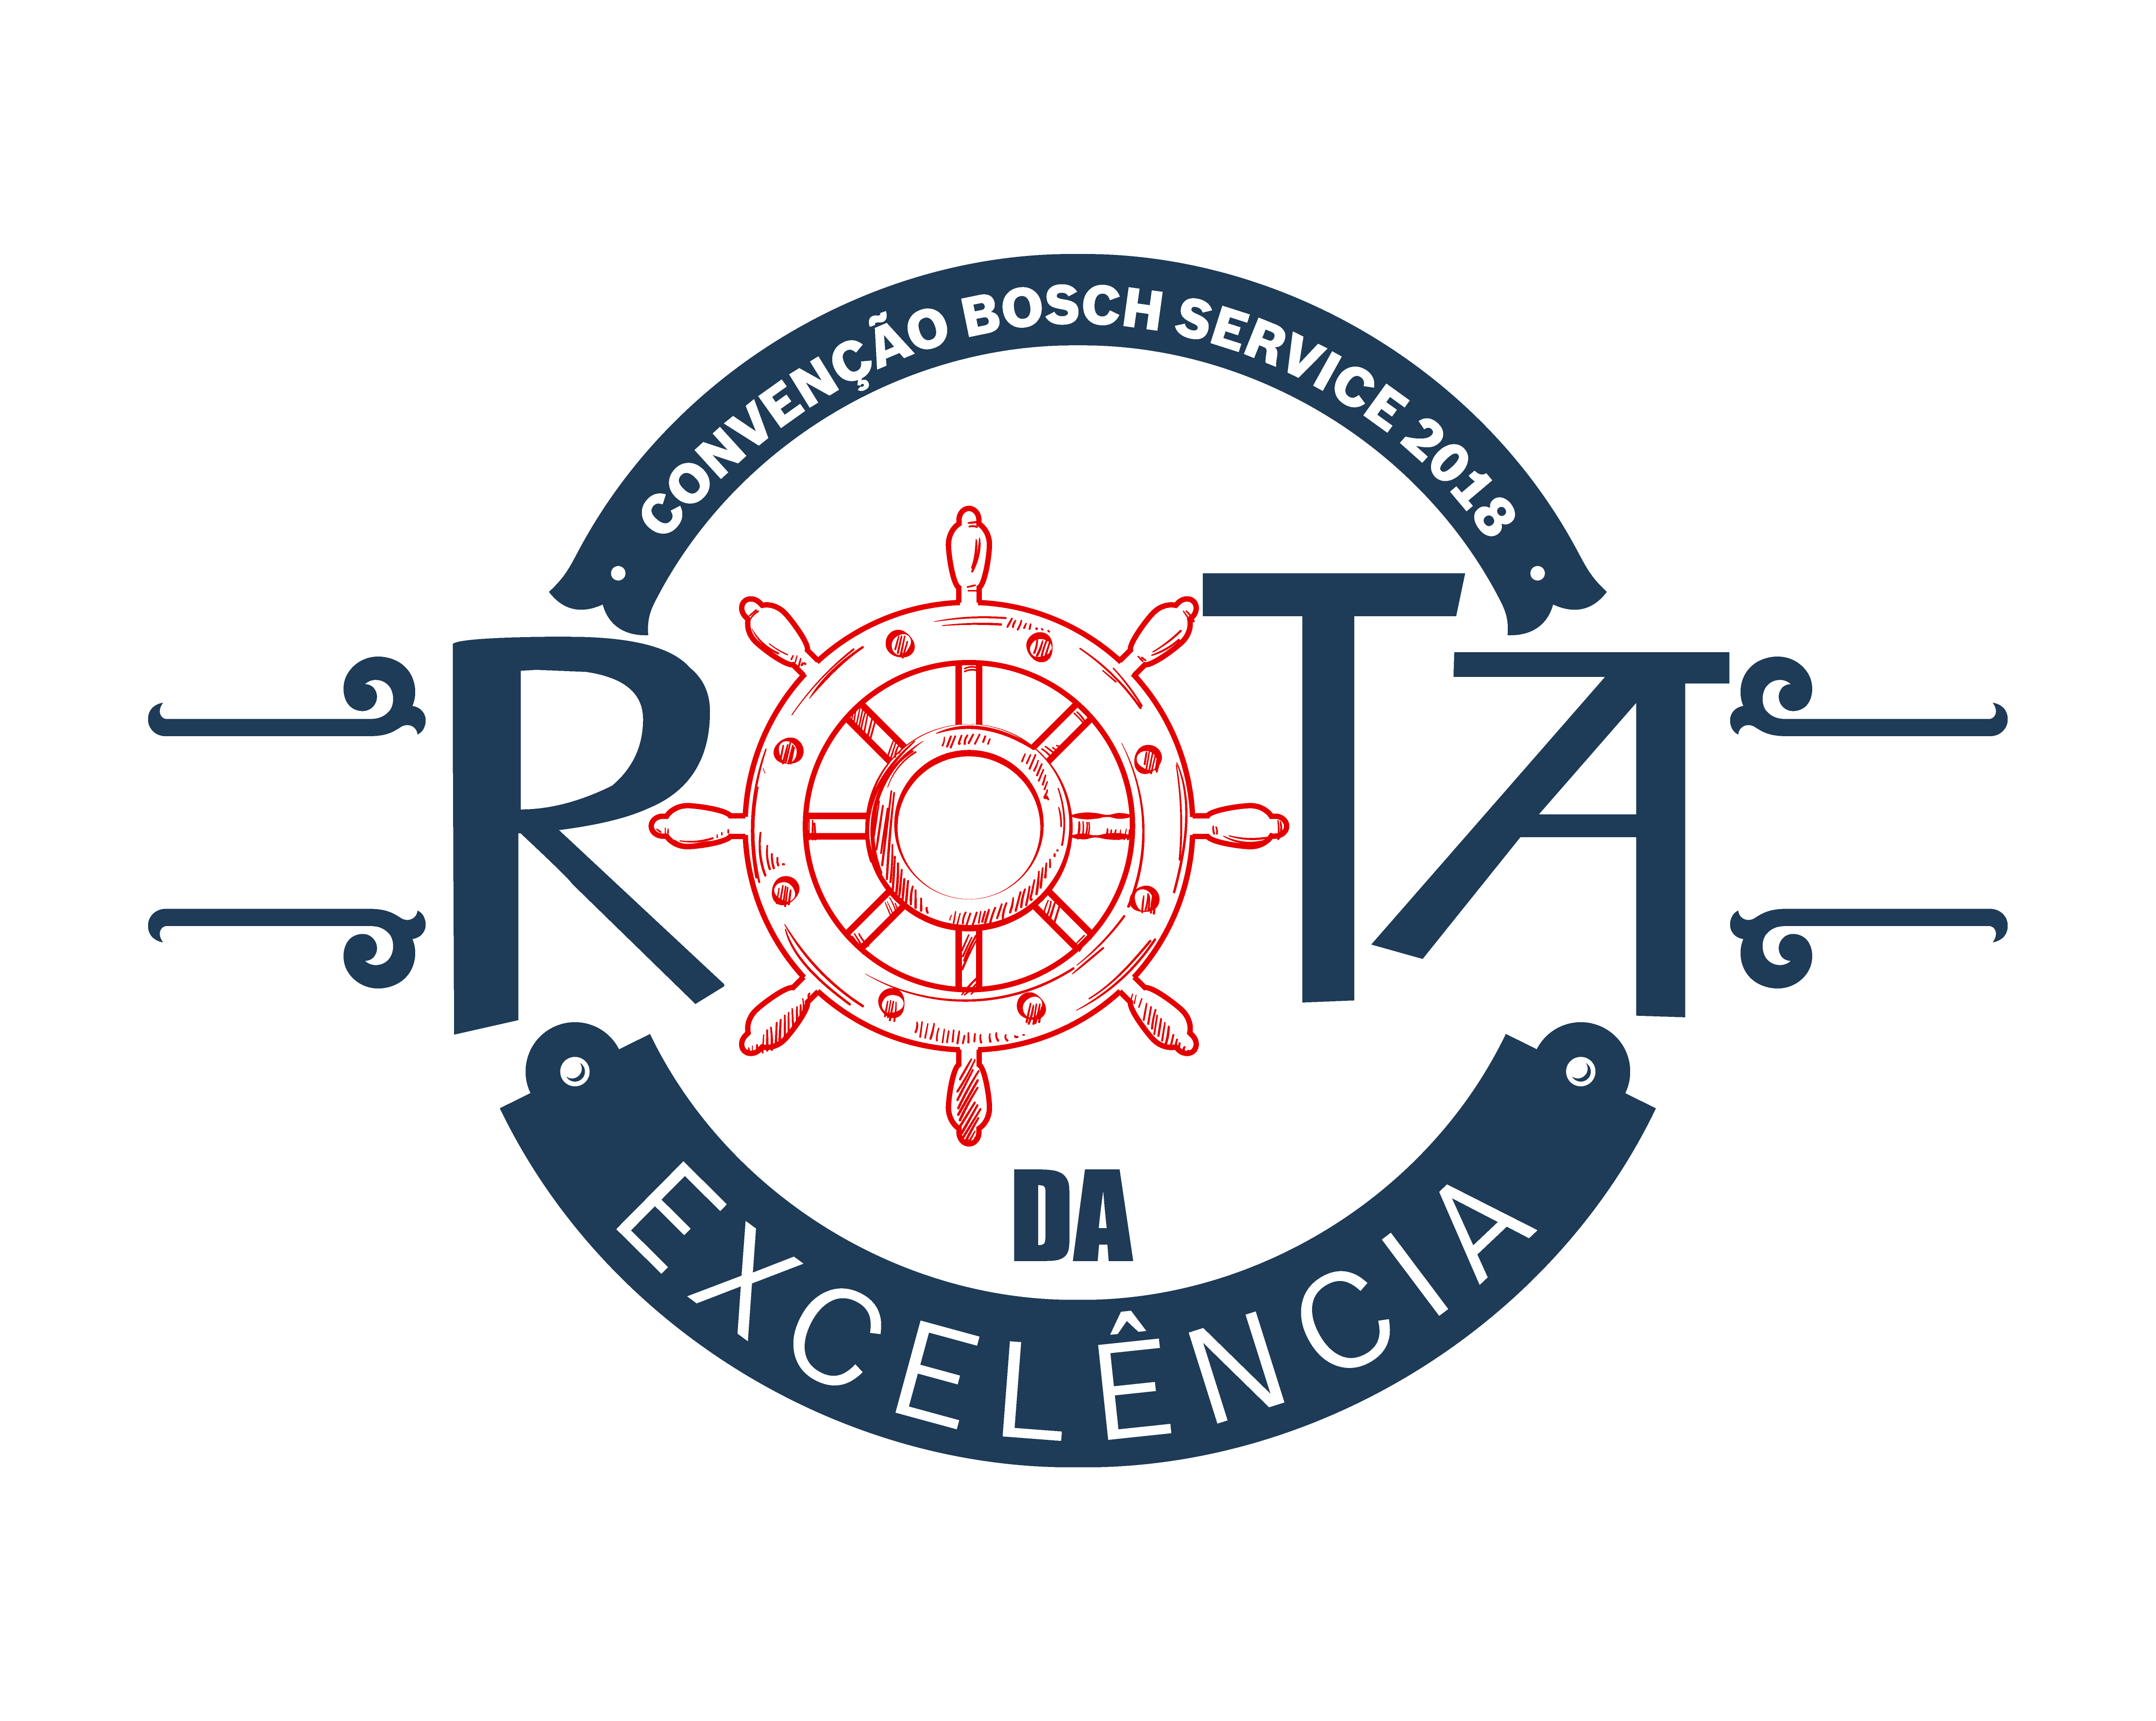 Logo Convenção Bosch Service - Rota da Excelência 